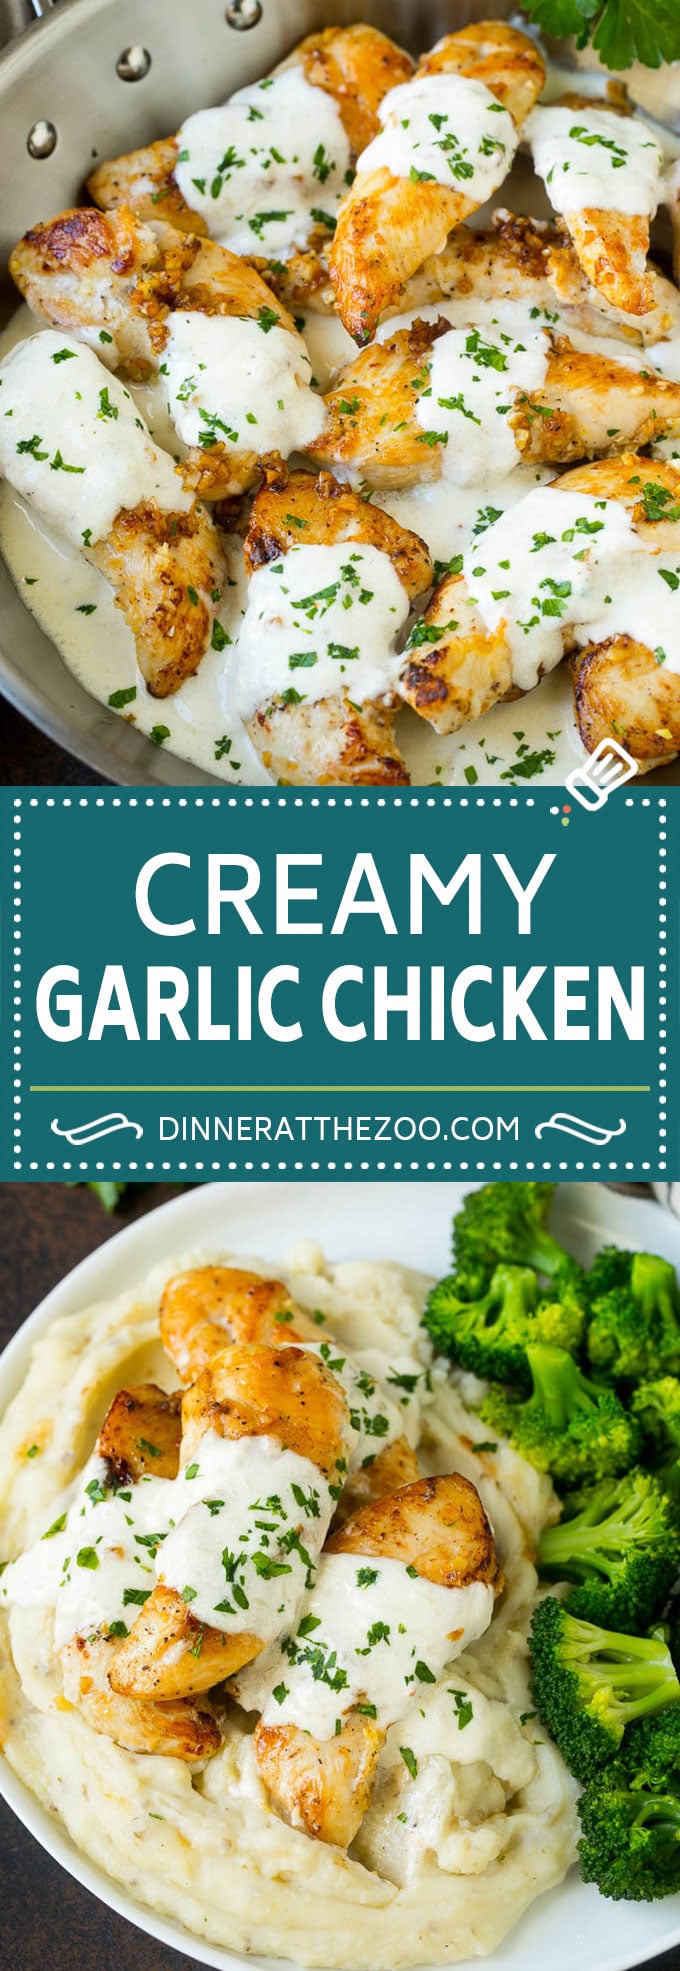 Creamy Garlic Chicken Recipe | Chicken Breast Tenders | Sauteed Chicken #chicken #garlic #parmesan #dinner #glutenfree #keto #lowcarb #dinneratthezoo